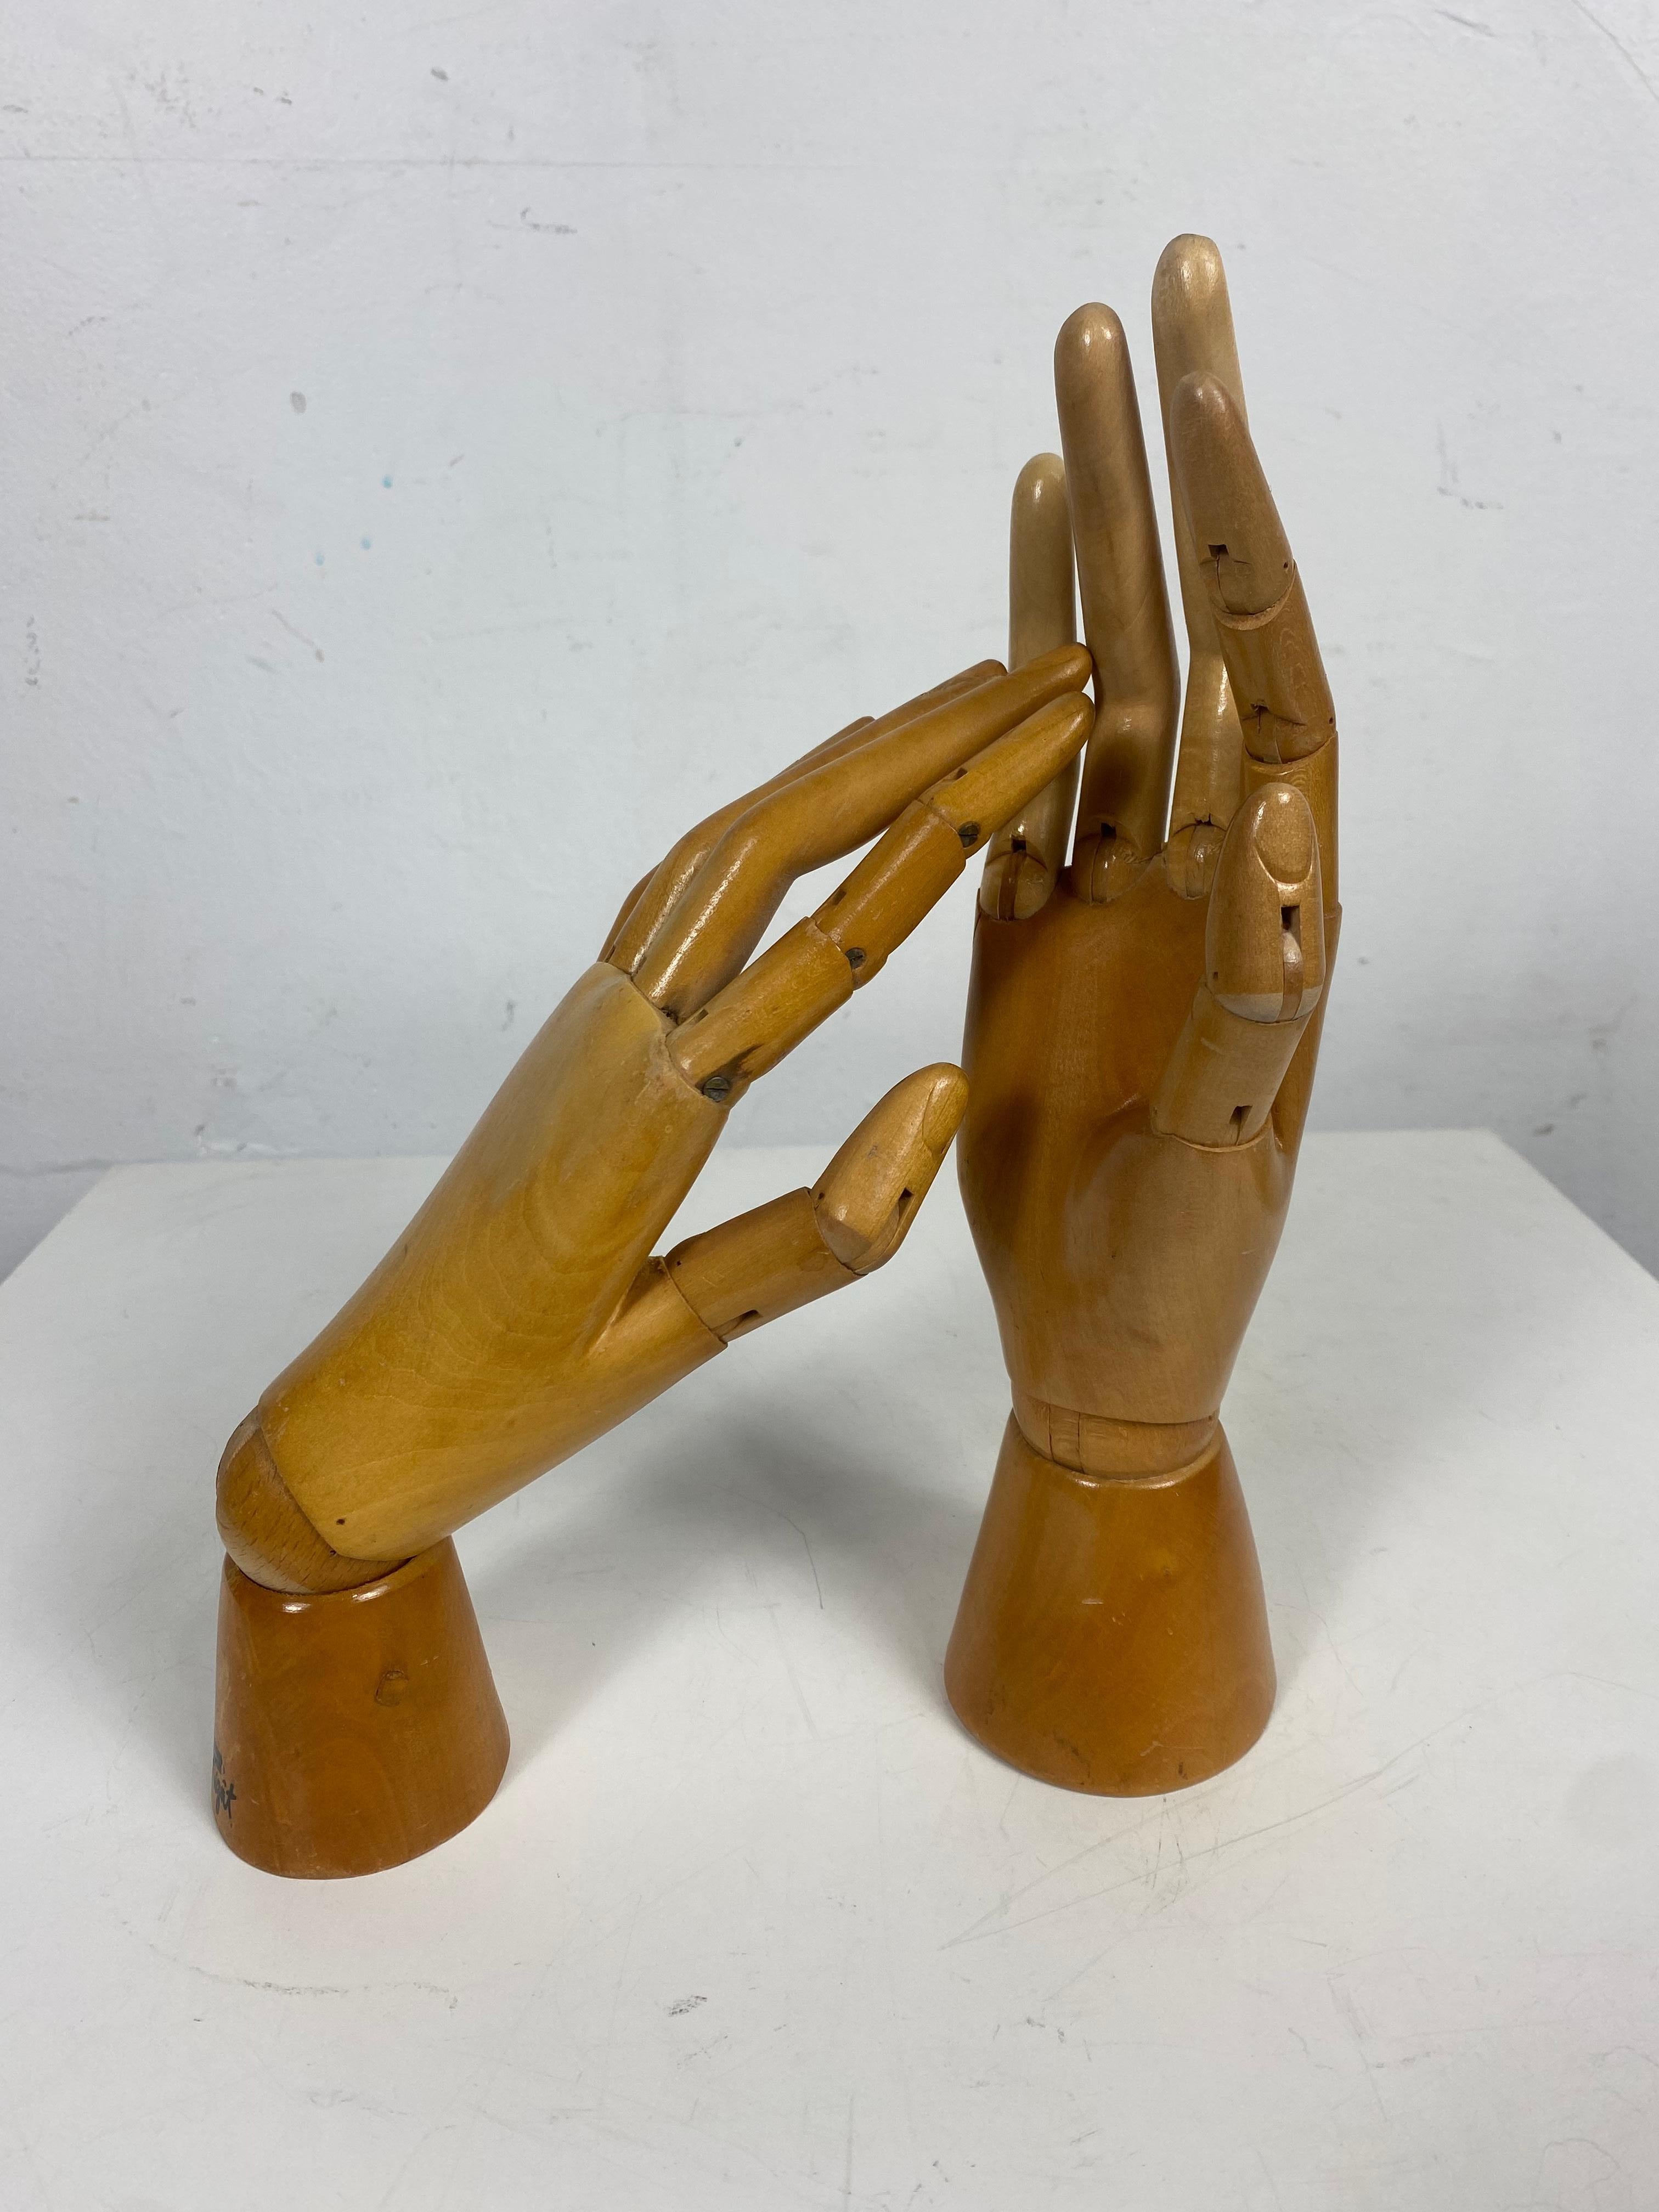 Industrial 1930s/ 1940s Articulated Wooden Hands, Artist Model, Drawing Tool, Belgium